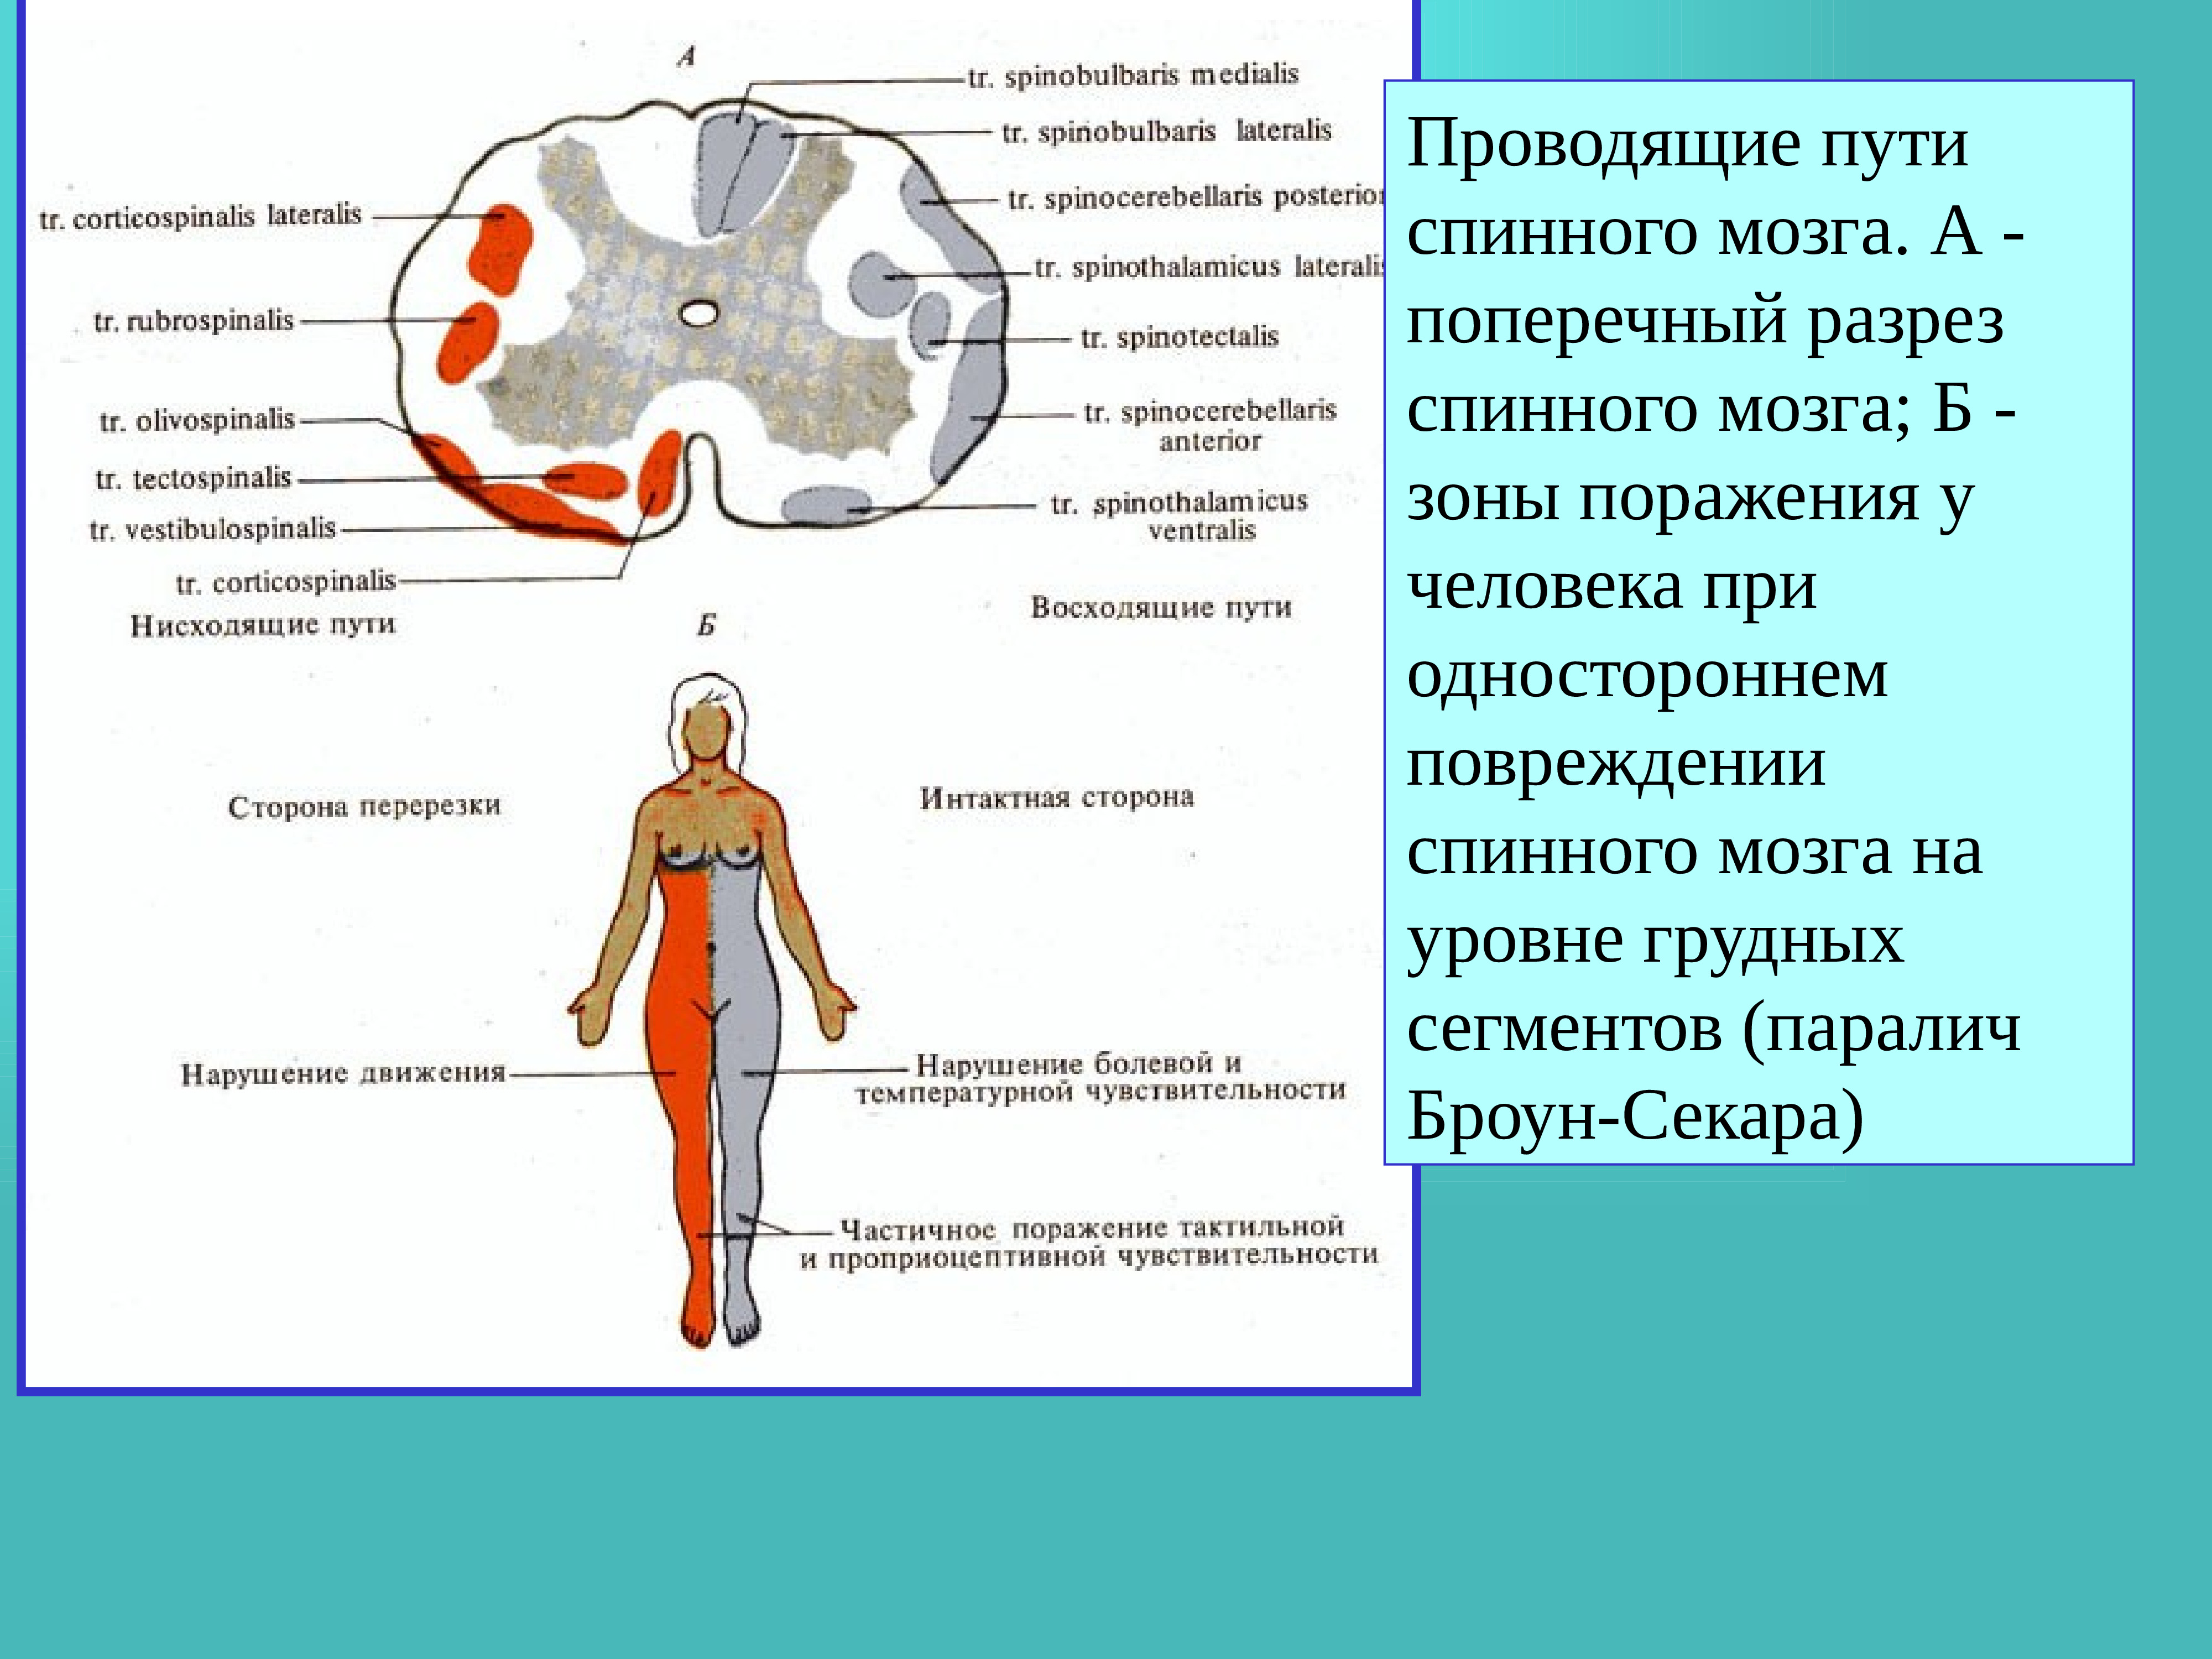 5 спинномозговых рефлексов. Рефлекторные акты человека при участии спинного мозга. Рефлекторная и Проводящая функции спинного мозга. Рефлекторная функция спинного мозга. Рефлексы спинного мозга.